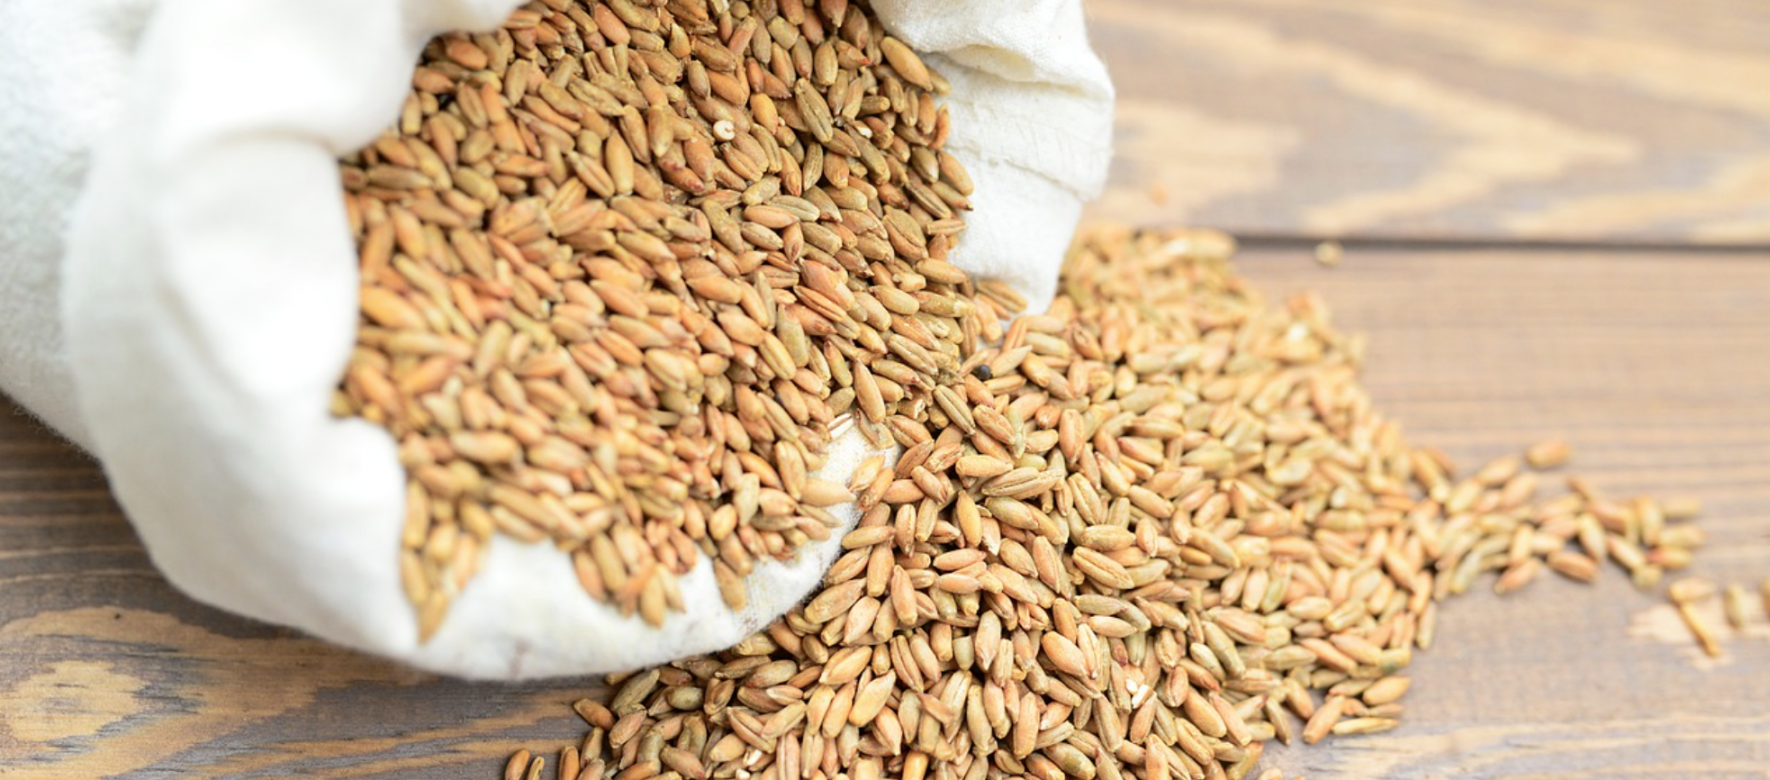 L’Algérie représente le second consommateur africain de blé derrière l’Egypte et le 5e importateur mondial de la céréale derrière l’Egypte, la Chine, l’Indonésie et la Turquie